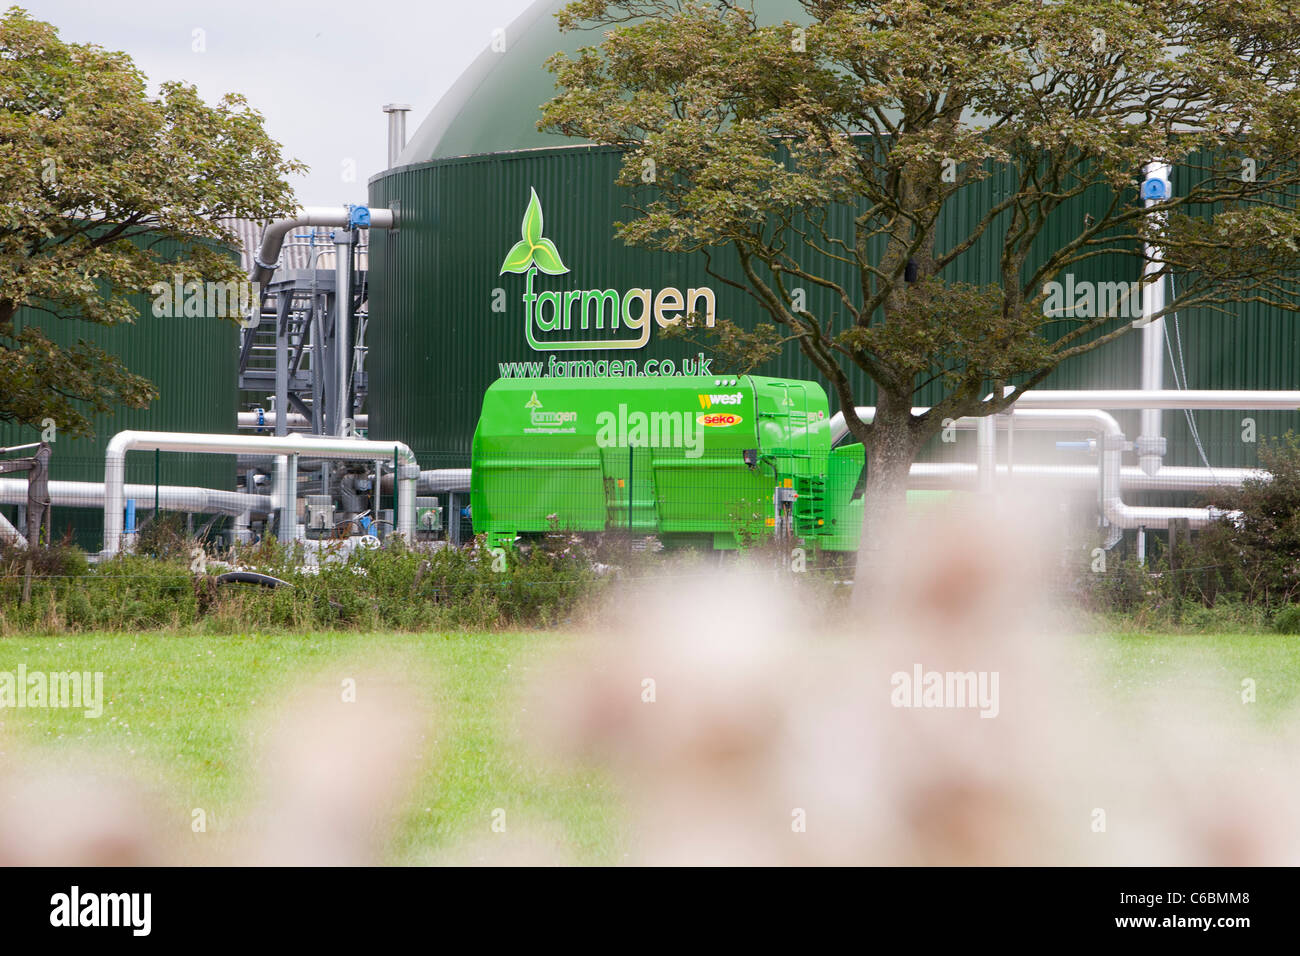 Farmgen,a lato di Carr Agriturismo vicino a warton, Regno Unito, è un biodigester anaerobico che produce elettricità a partire da bio metano Foto Stock